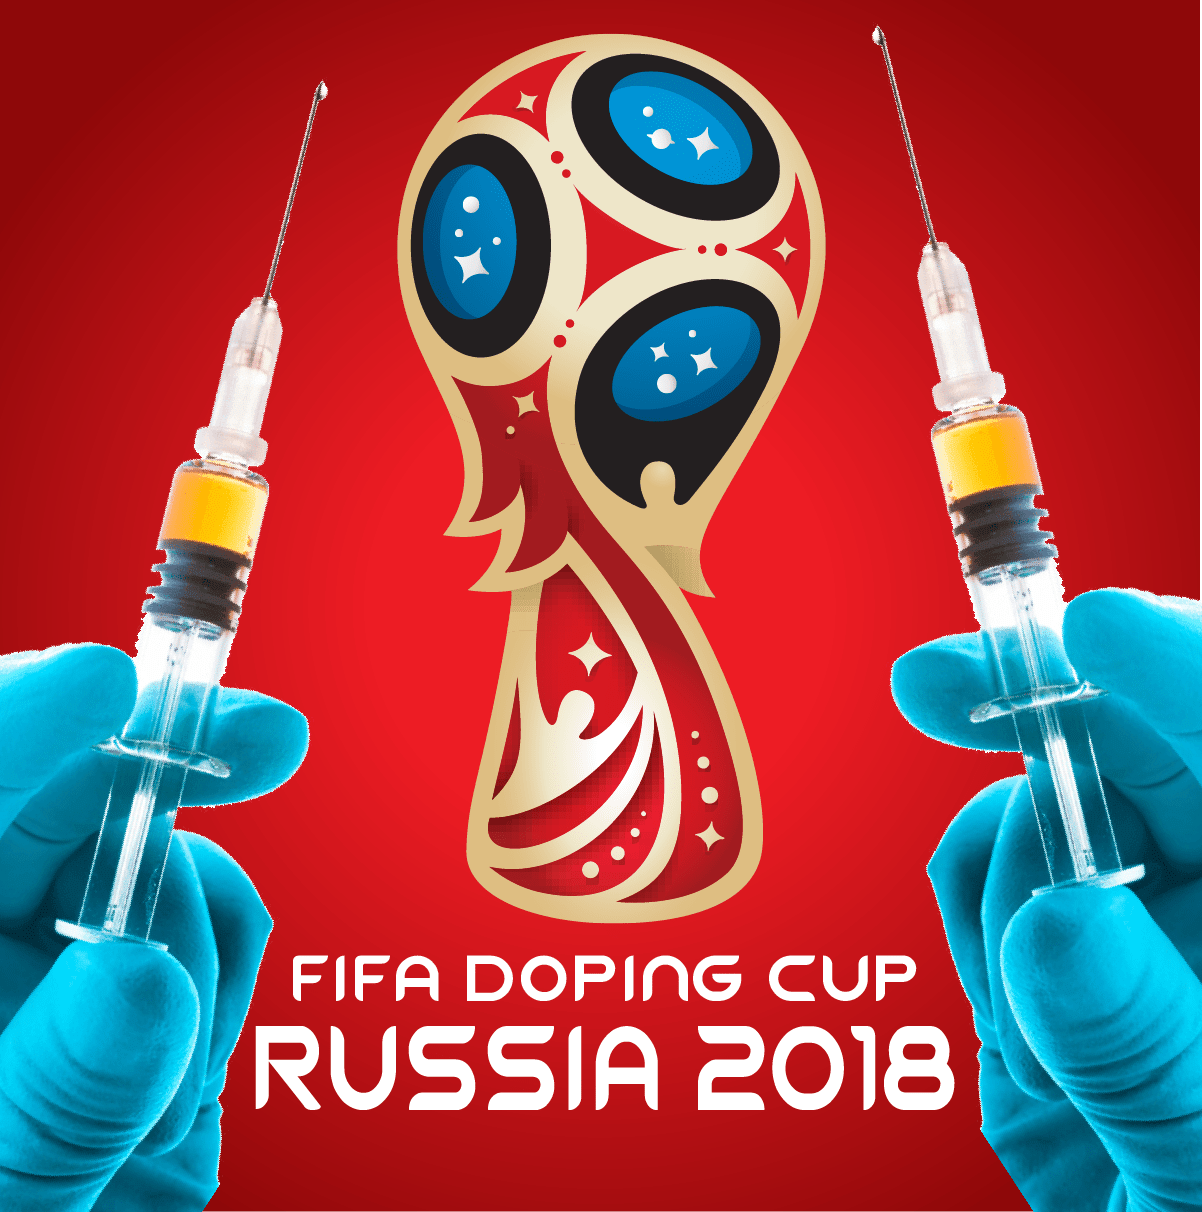 Russland Doping FIFA fussball World cup 2018 weltmeisterschaft hetze-01